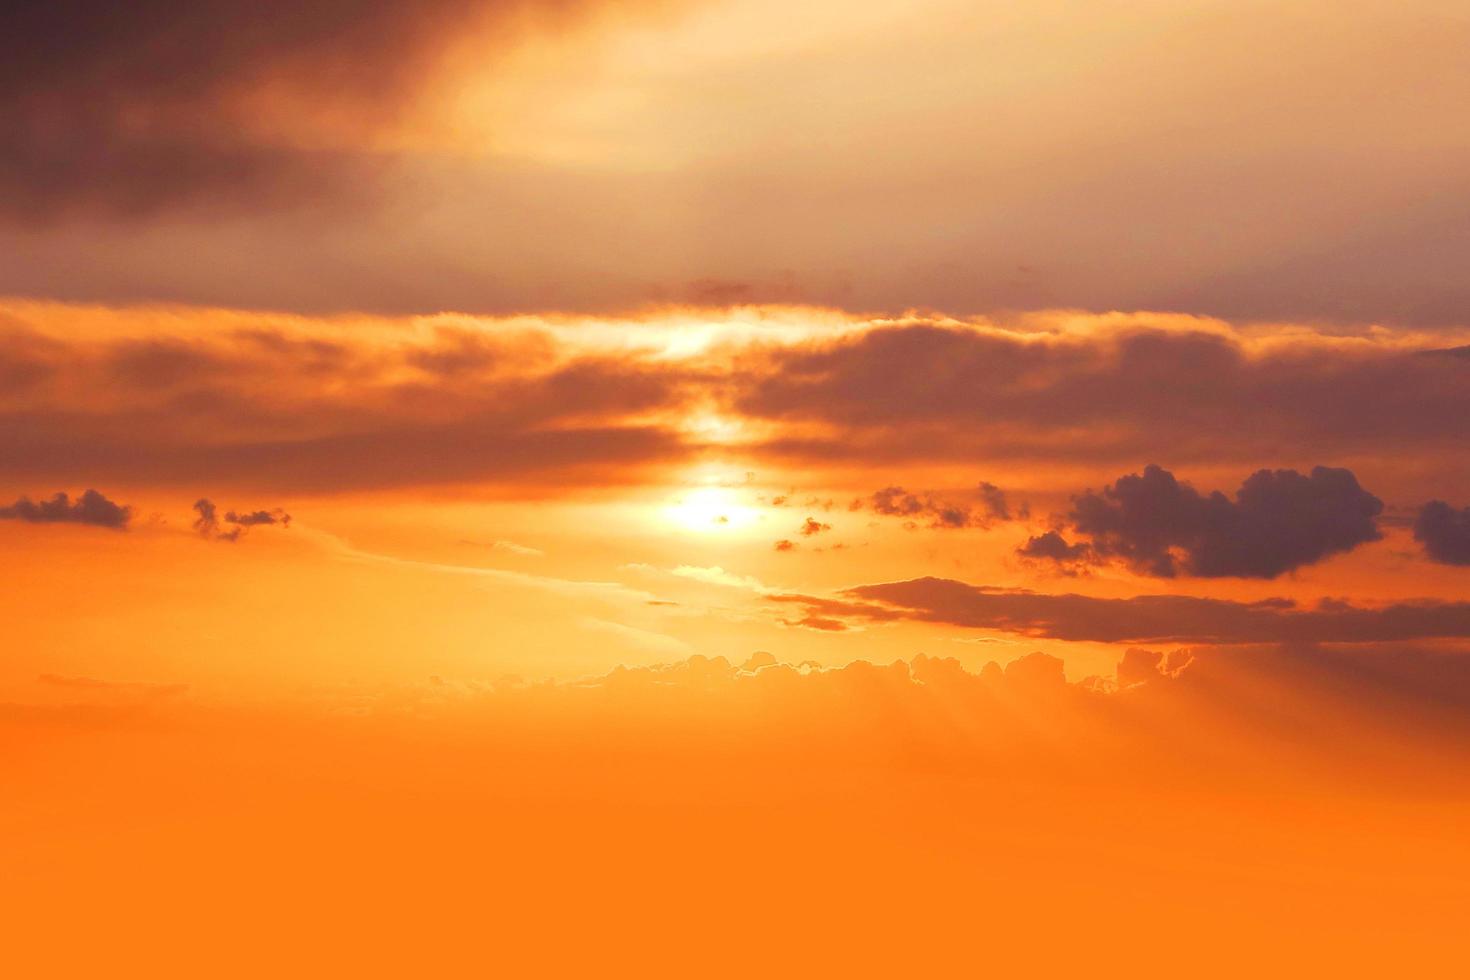 Đỏ cam hoàng hôn thật là một khoảnh khắc đẹp khi ánh nắng buông xuống và tóc gió thổi nhẹ qua mái tóc bạn. Hãy chiêm ngưỡng hình ảnh này để cảm nhận những cung bậc cảm xúc tuyệt vời của một đêm hoàng hôn xuyên qua mây đỏ cam.